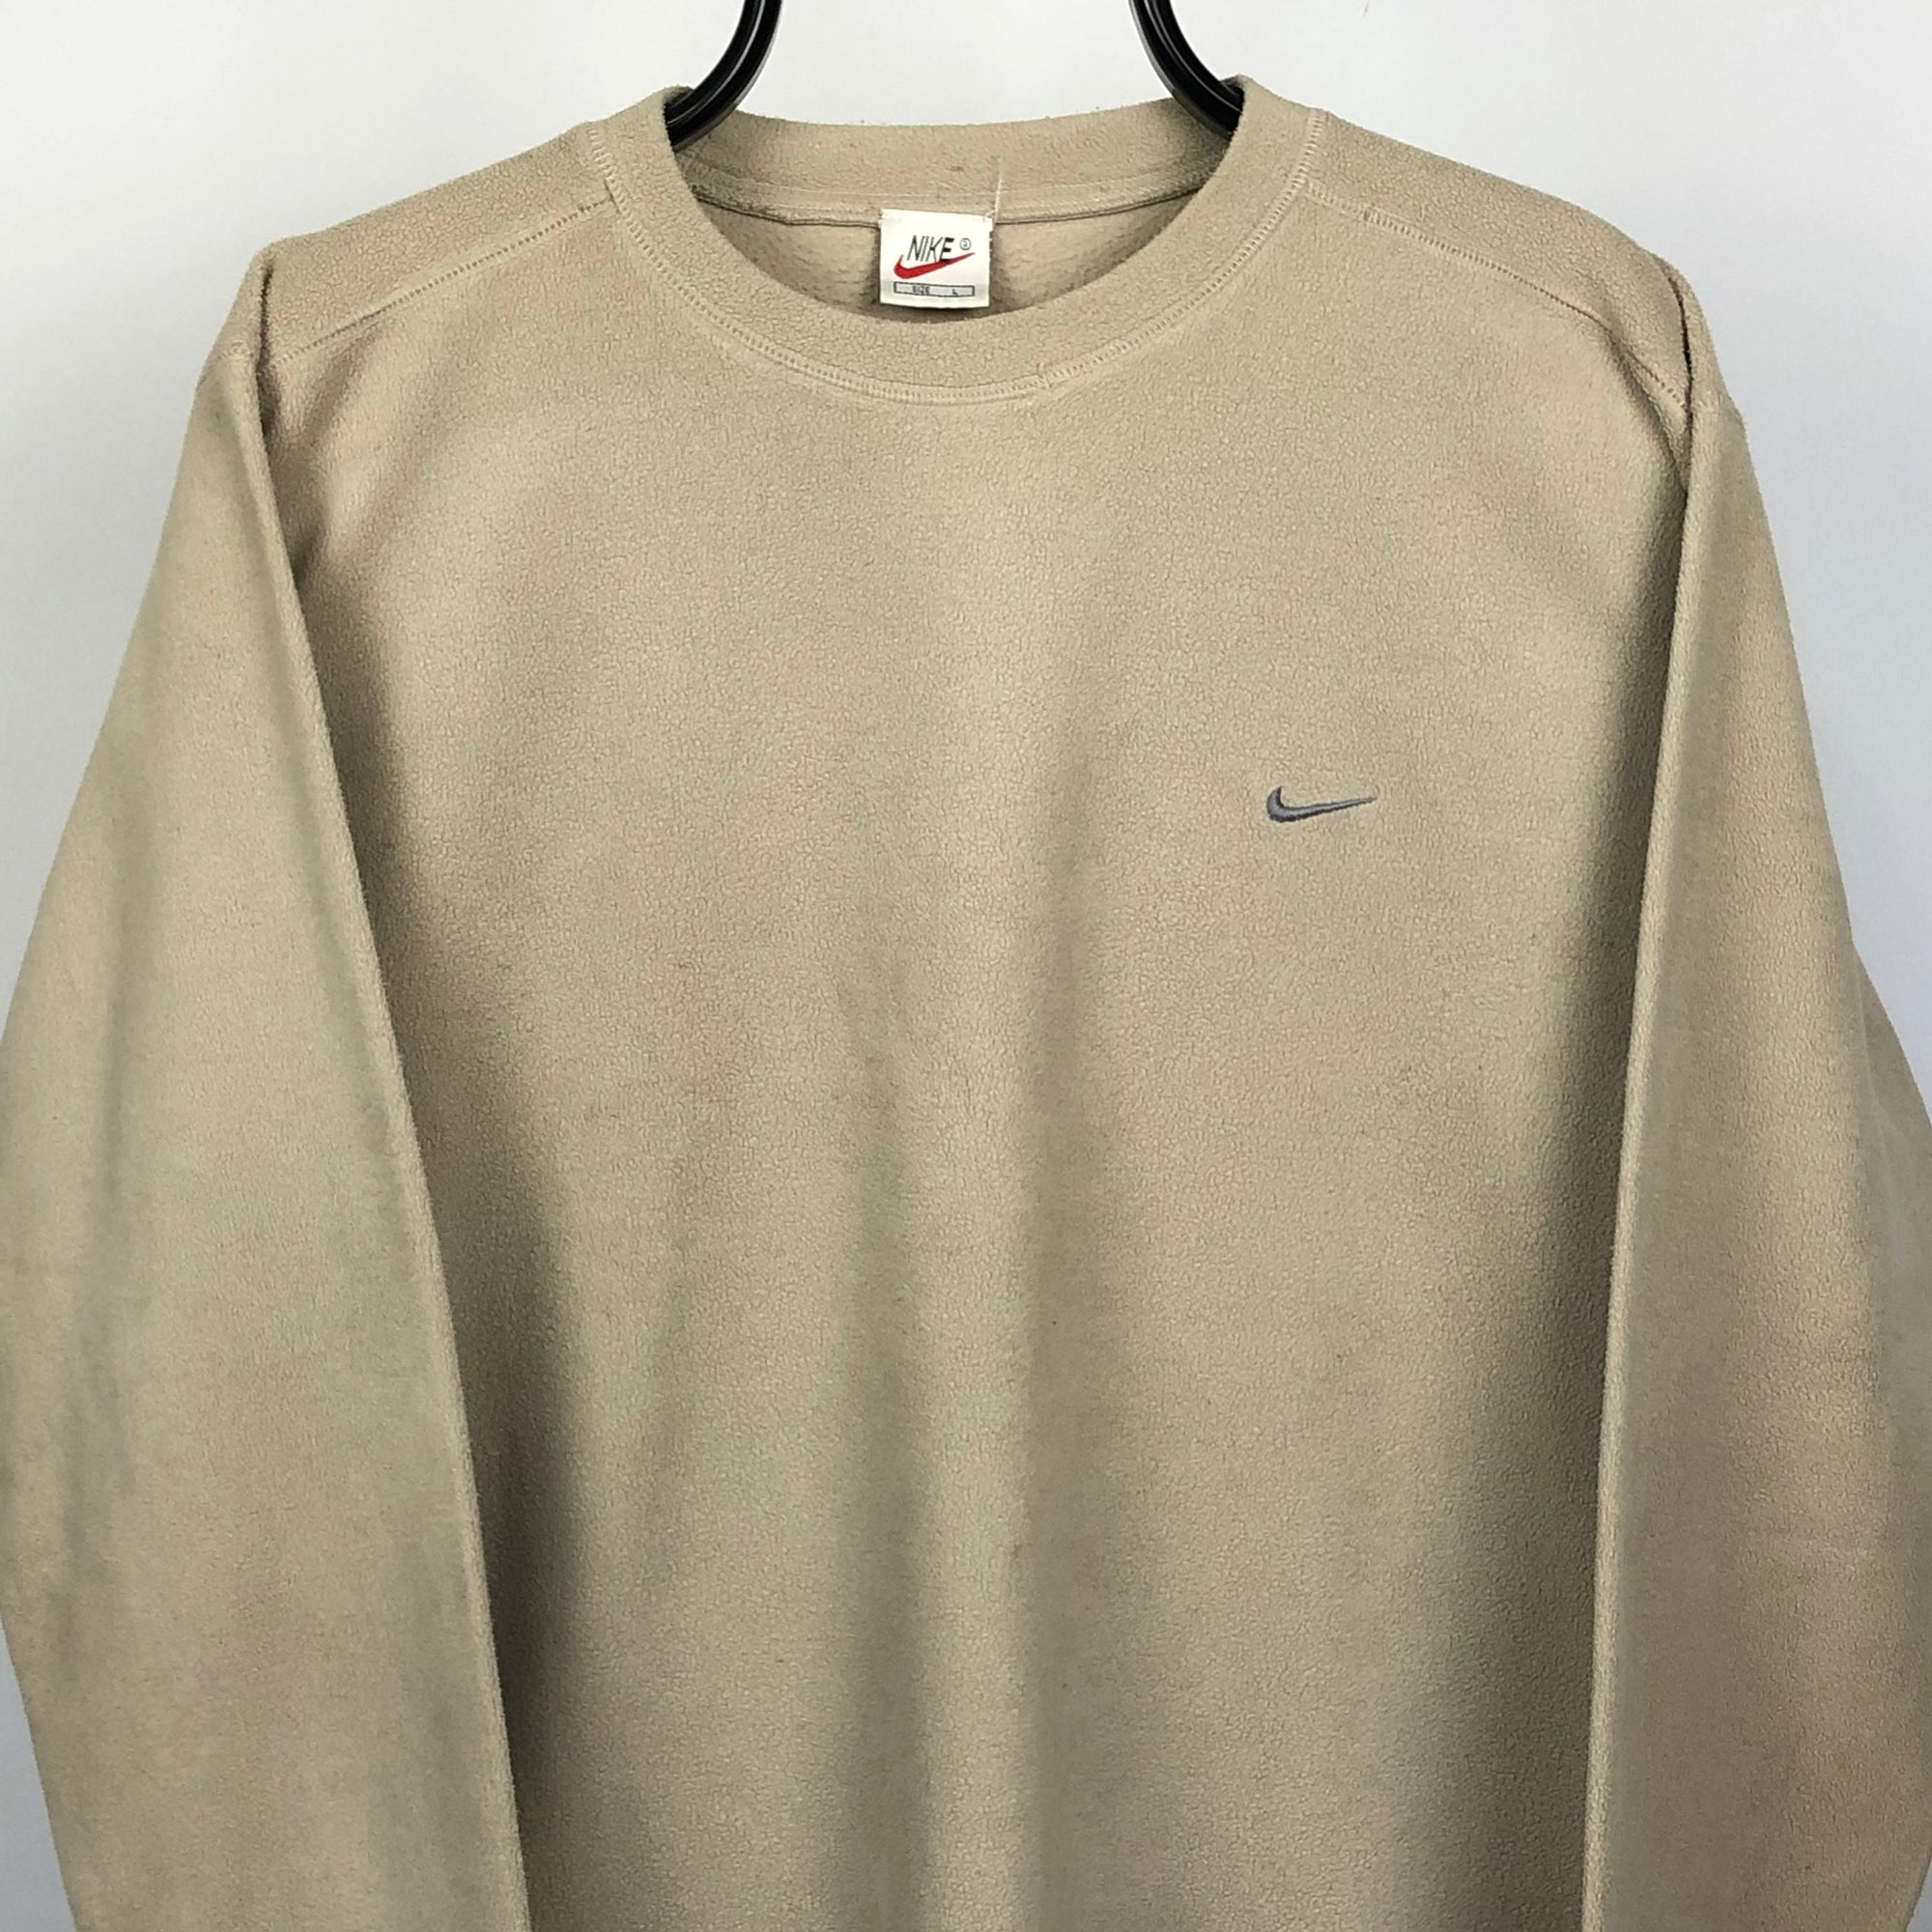 Vintage Nike Fleece Sweatshirt in Beige - Men's Medium/Women's Large